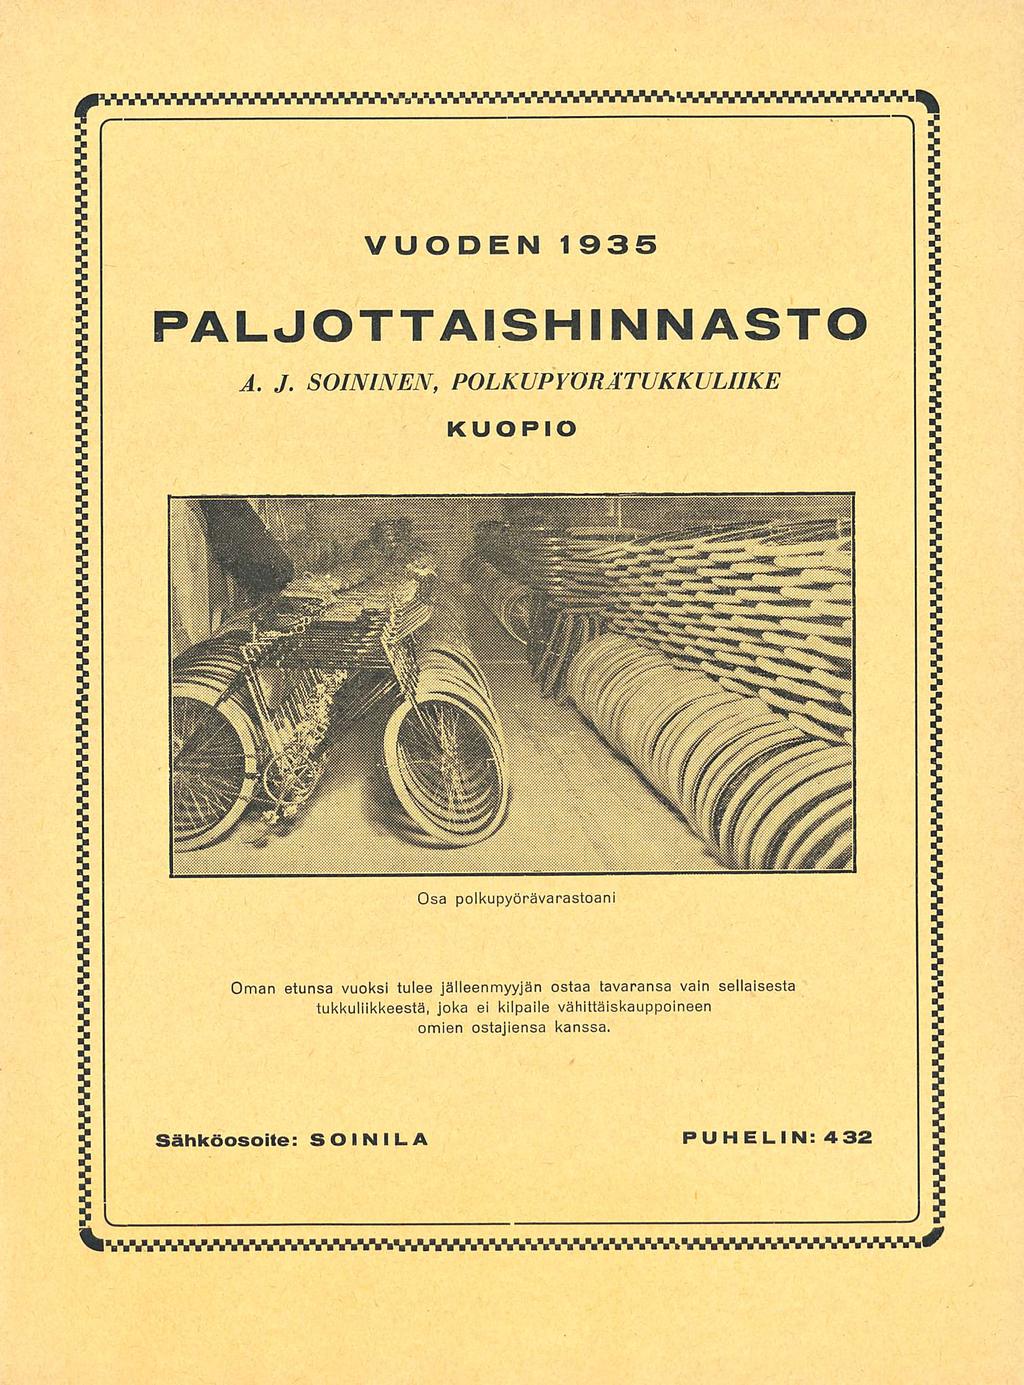 VUODEN 1 935 PALJOTTAISHINNASTO A.J.SOININEN.